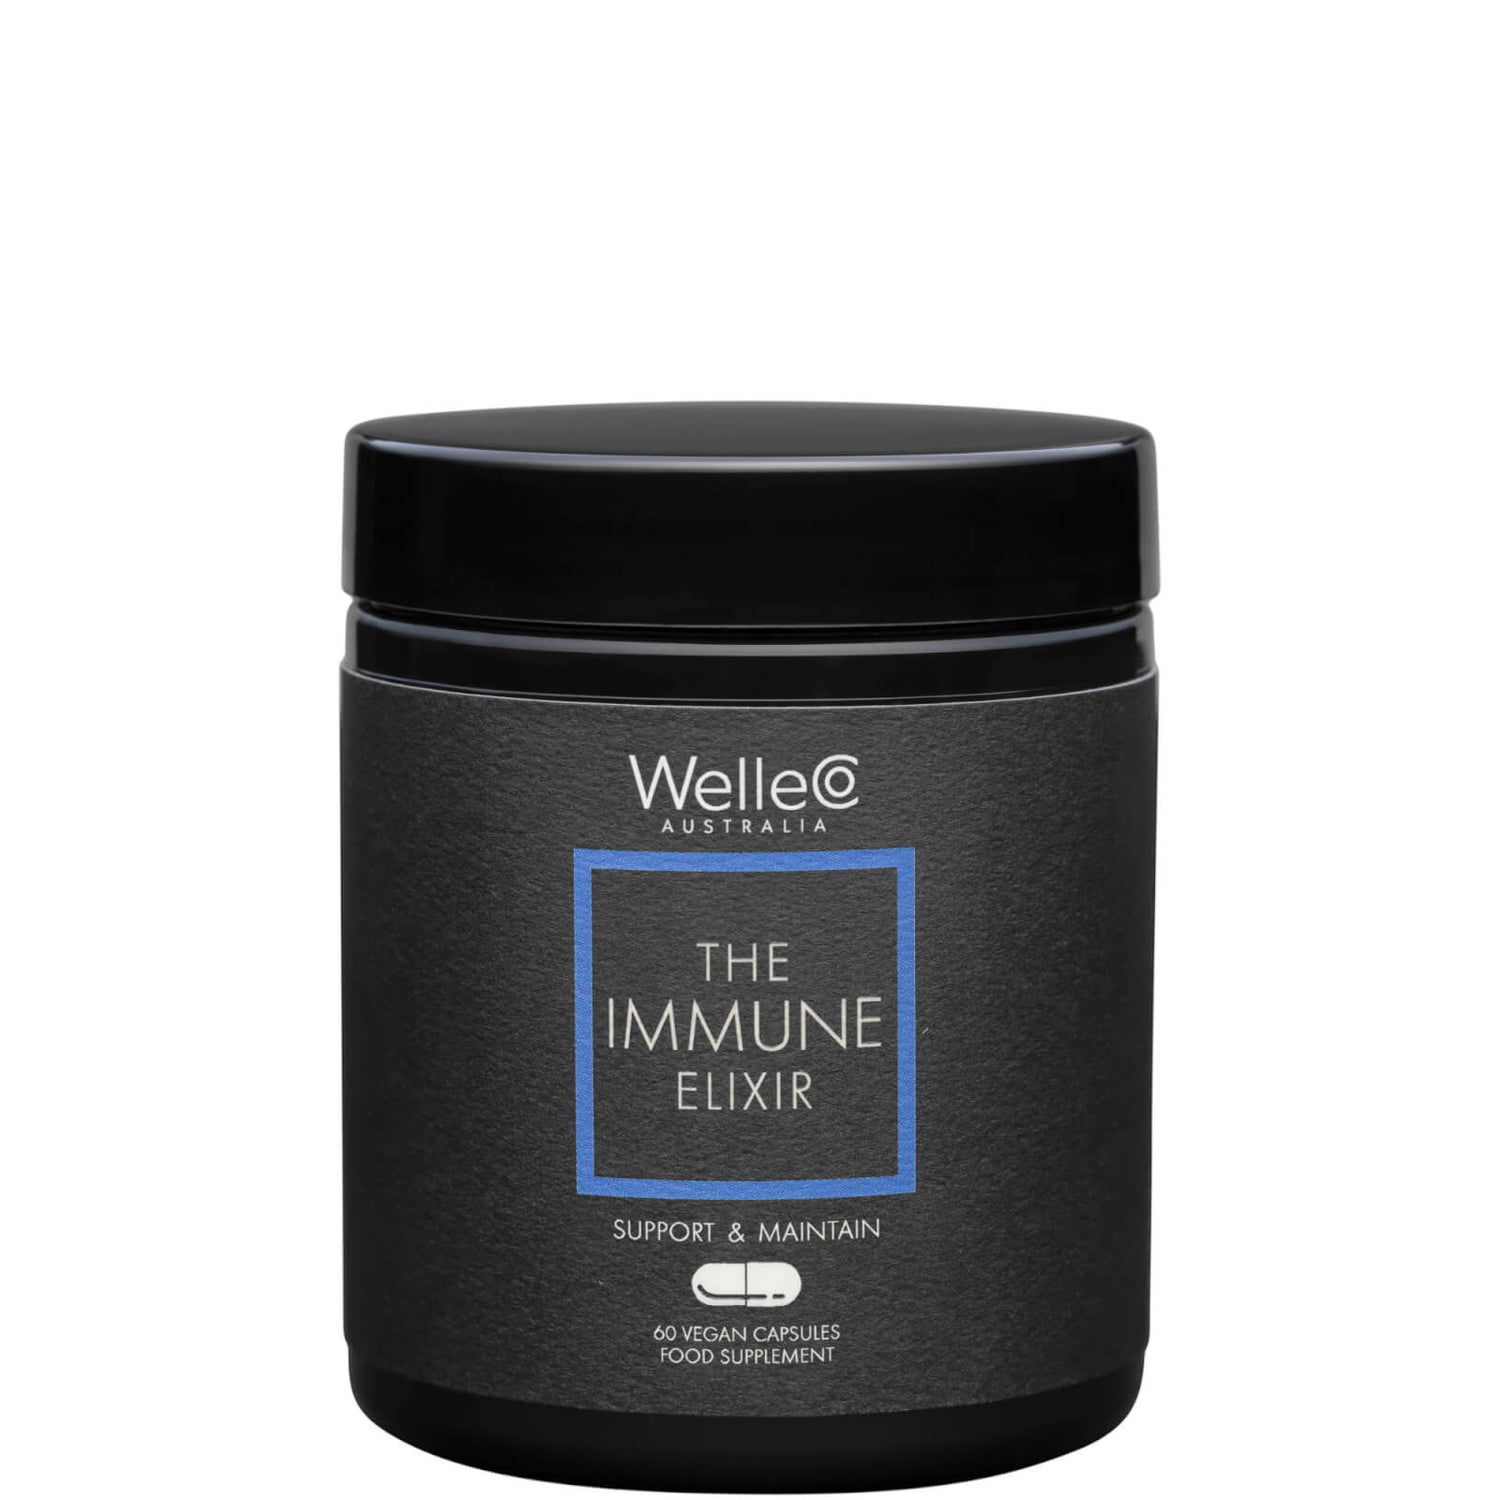 WelleCo The Immune Elixir - 60 capsules UK/EU